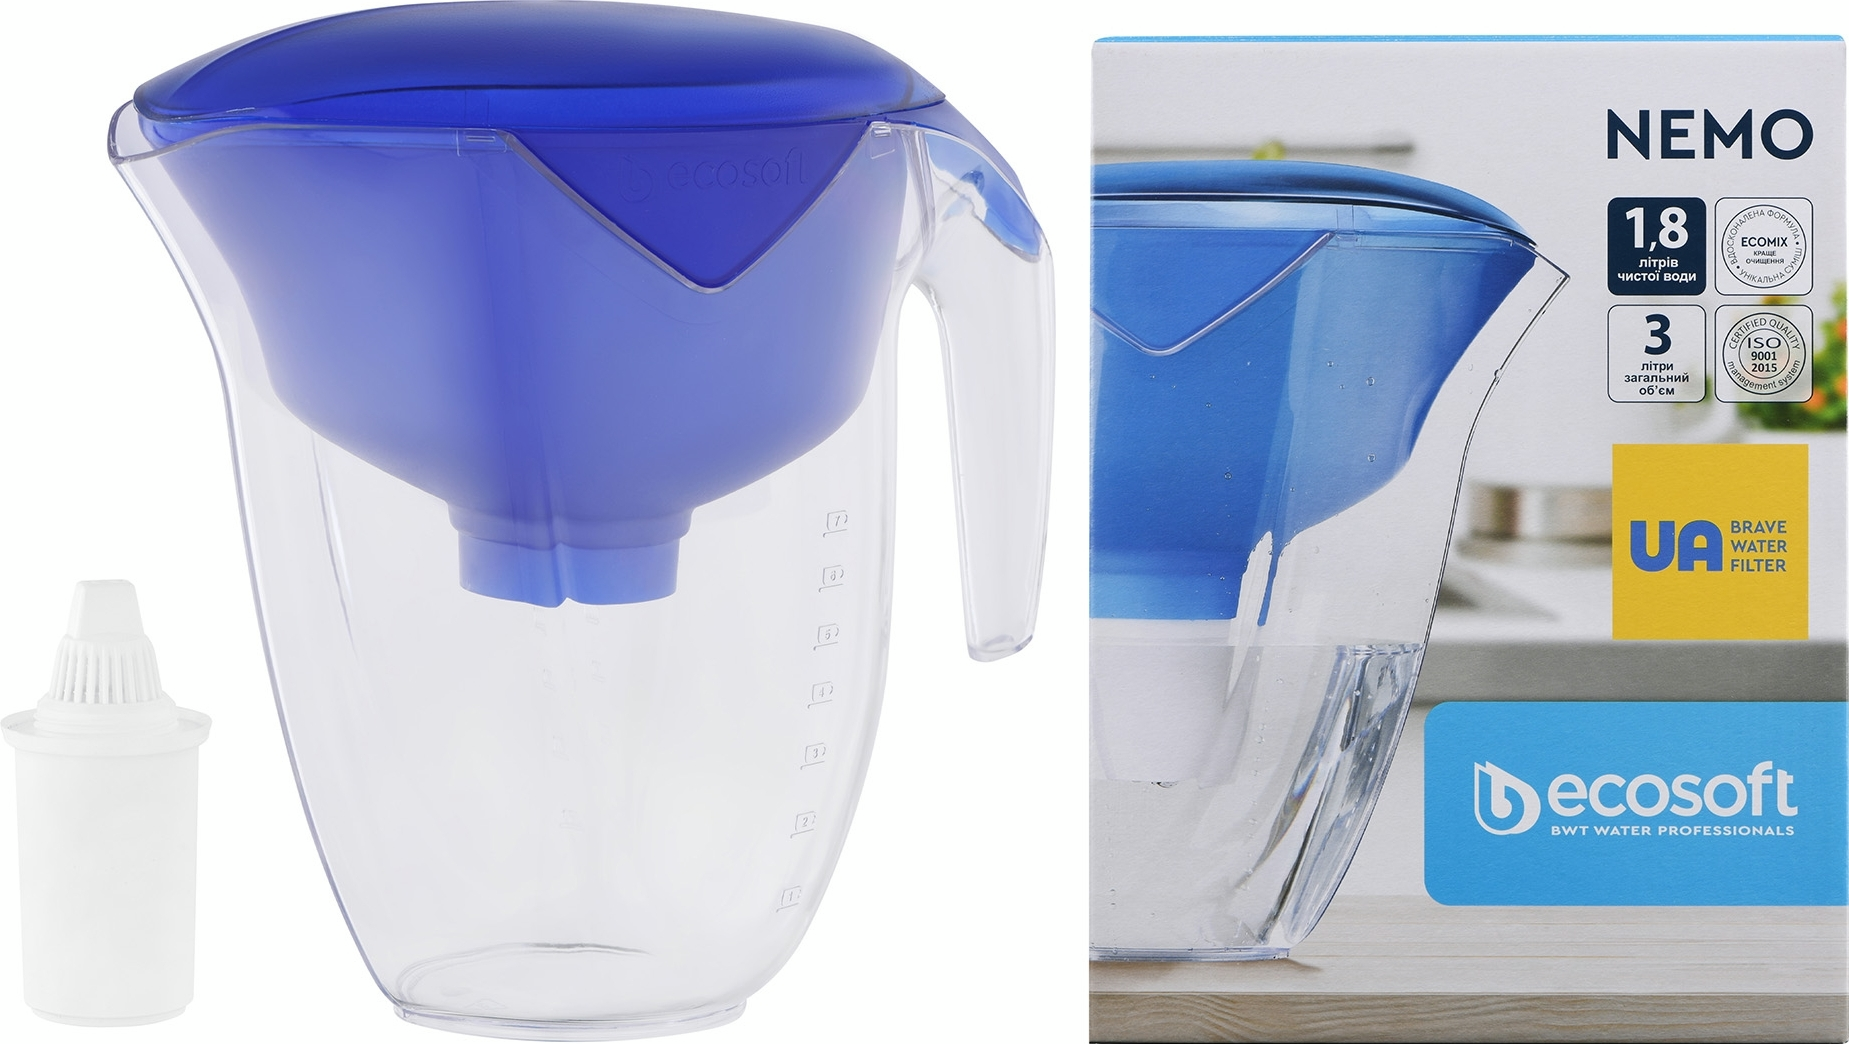 Фільтр-глечик Ecosoft Нemo 3л (1.8л очищеної води), синій (FMVNEMOBECO)фото3